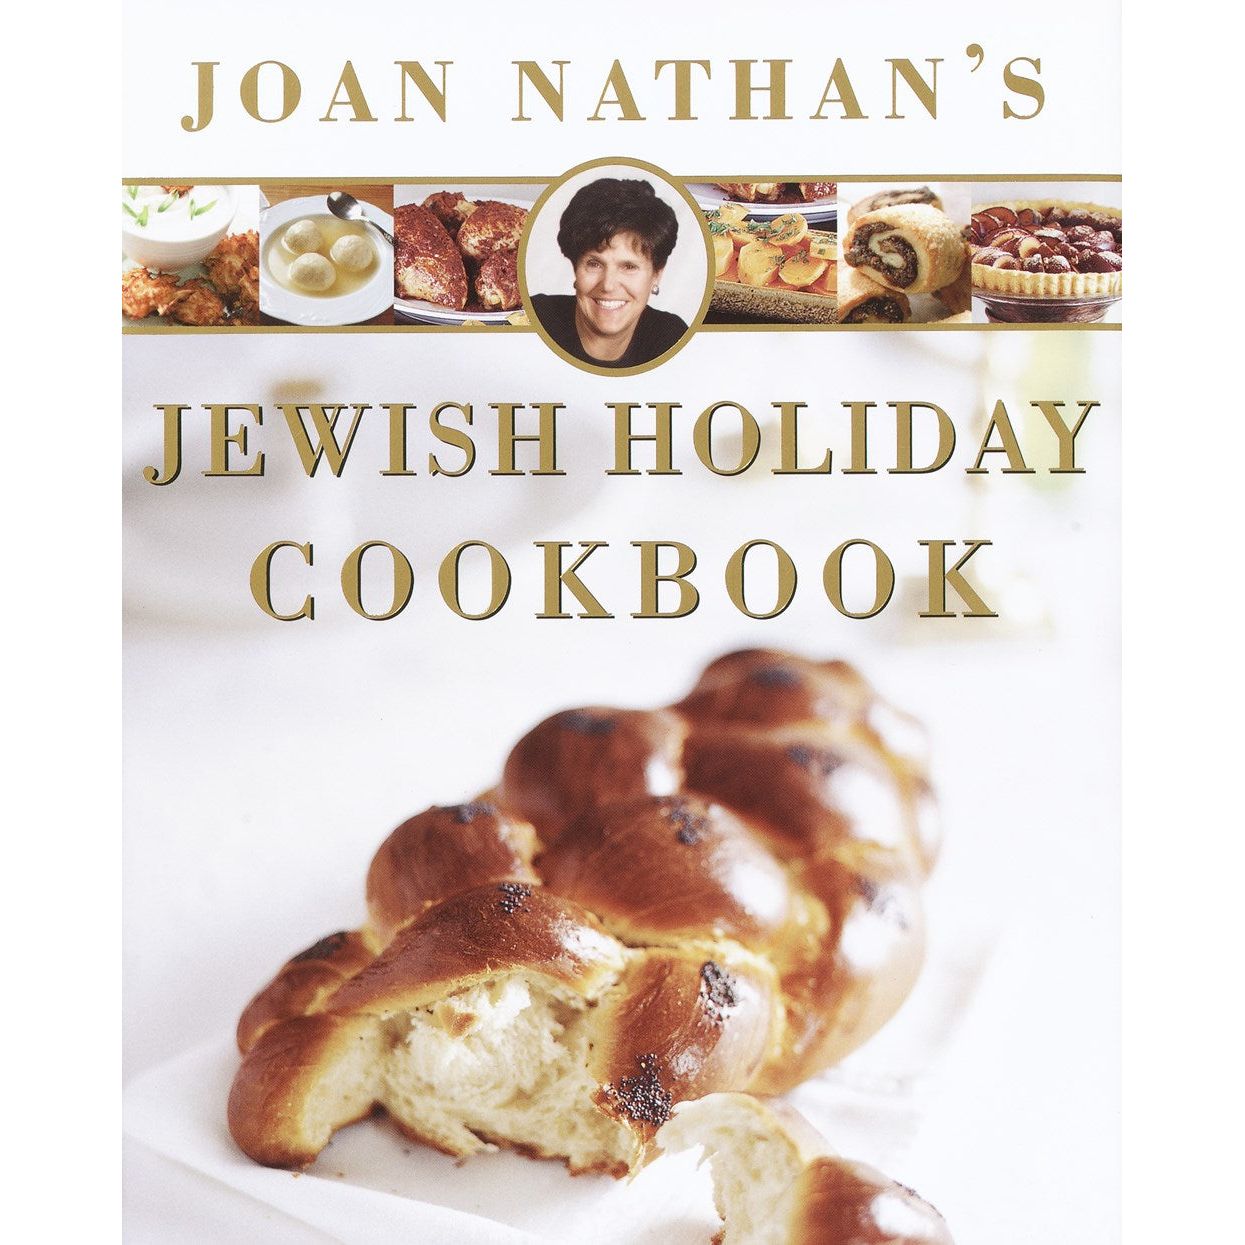 Jewish Holiday Cookbook (Joan Nathan)